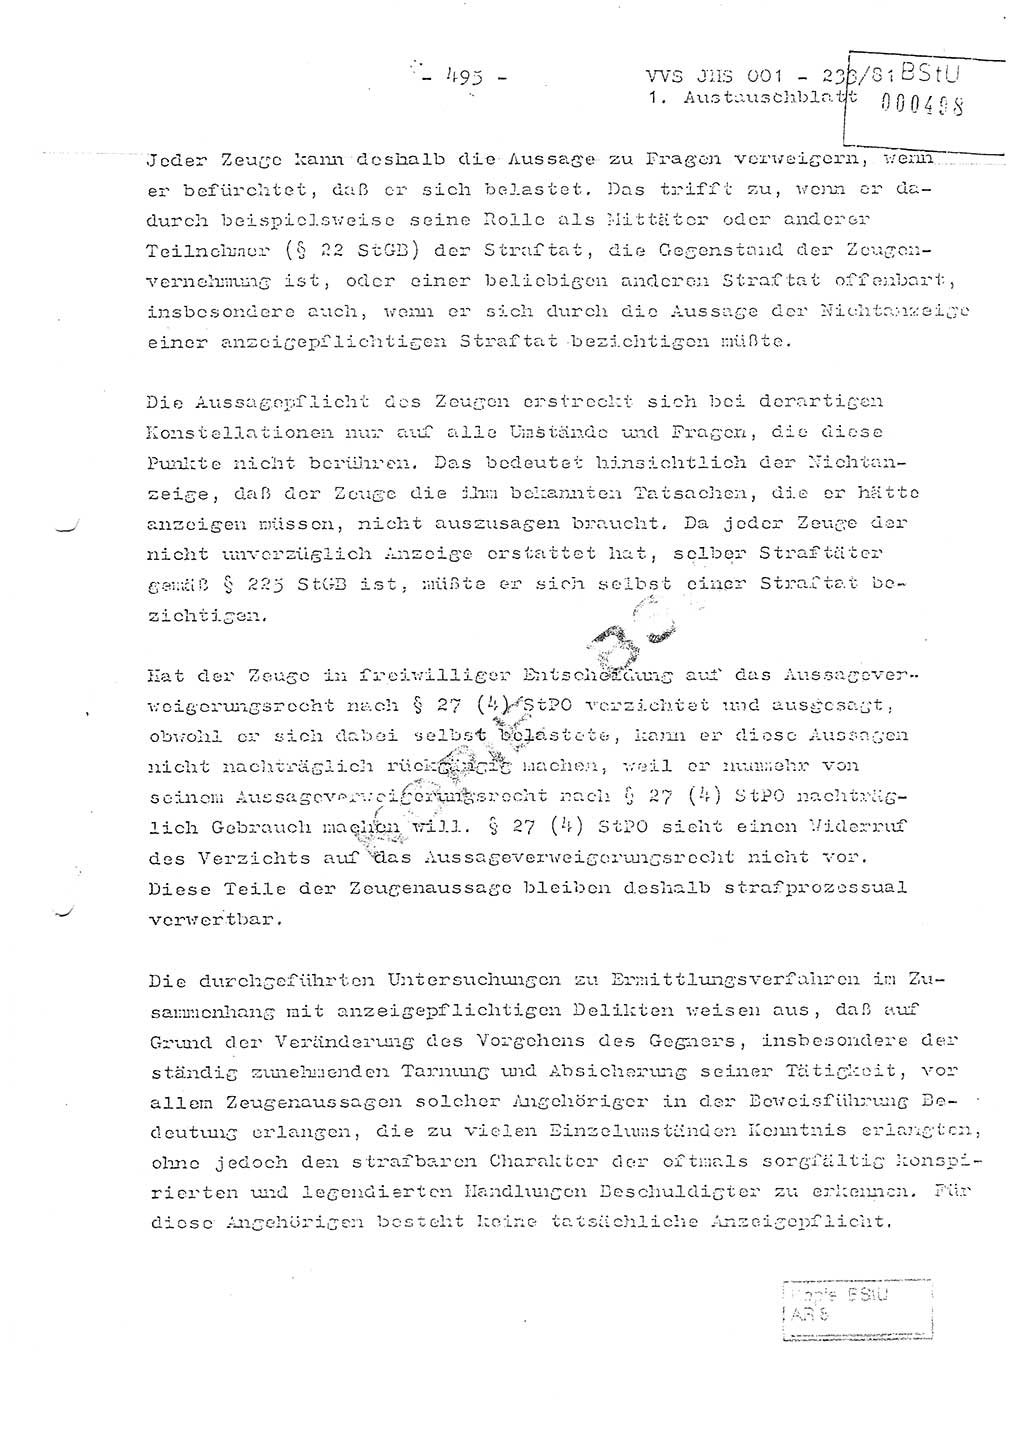 Dissertation Oberstleutnant Horst Zank (JHS), Oberstleutnant Dr. Karl-Heinz Knoblauch (JHS), Oberstleutnant Gustav-Adolf Kowalewski (HA Ⅸ), Oberstleutnant Wolfgang Plötner (HA Ⅸ), Ministerium für Staatssicherheit (MfS) [Deutsche Demokratische Republik (DDR)], Juristische Hochschule (JHS), Vertrauliche Verschlußsache (VVS) o001-233/81, Potsdam 1981, Blatt 495 (Diss. MfS DDR JHS VVS o001-233/81 1981, Bl. 495)